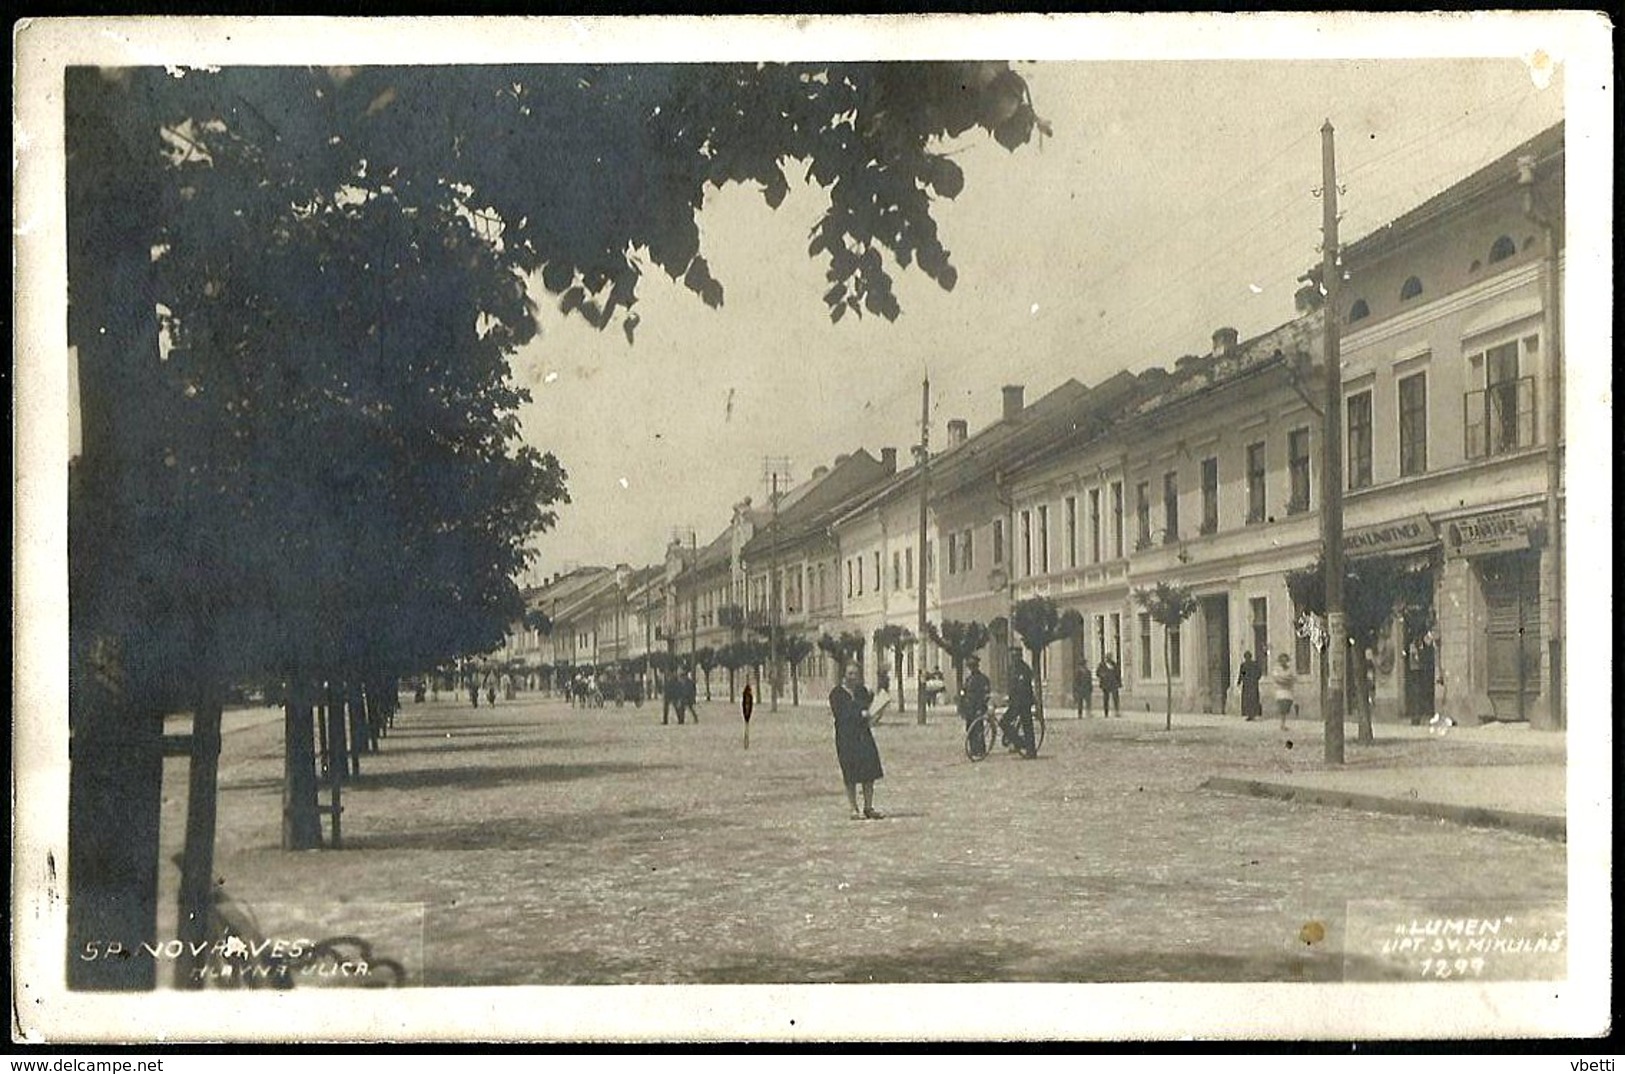 Slovakia / Hungary: Spišská Nová Ves (Igló / Zipser Neudorf), Lot of 7 postcards